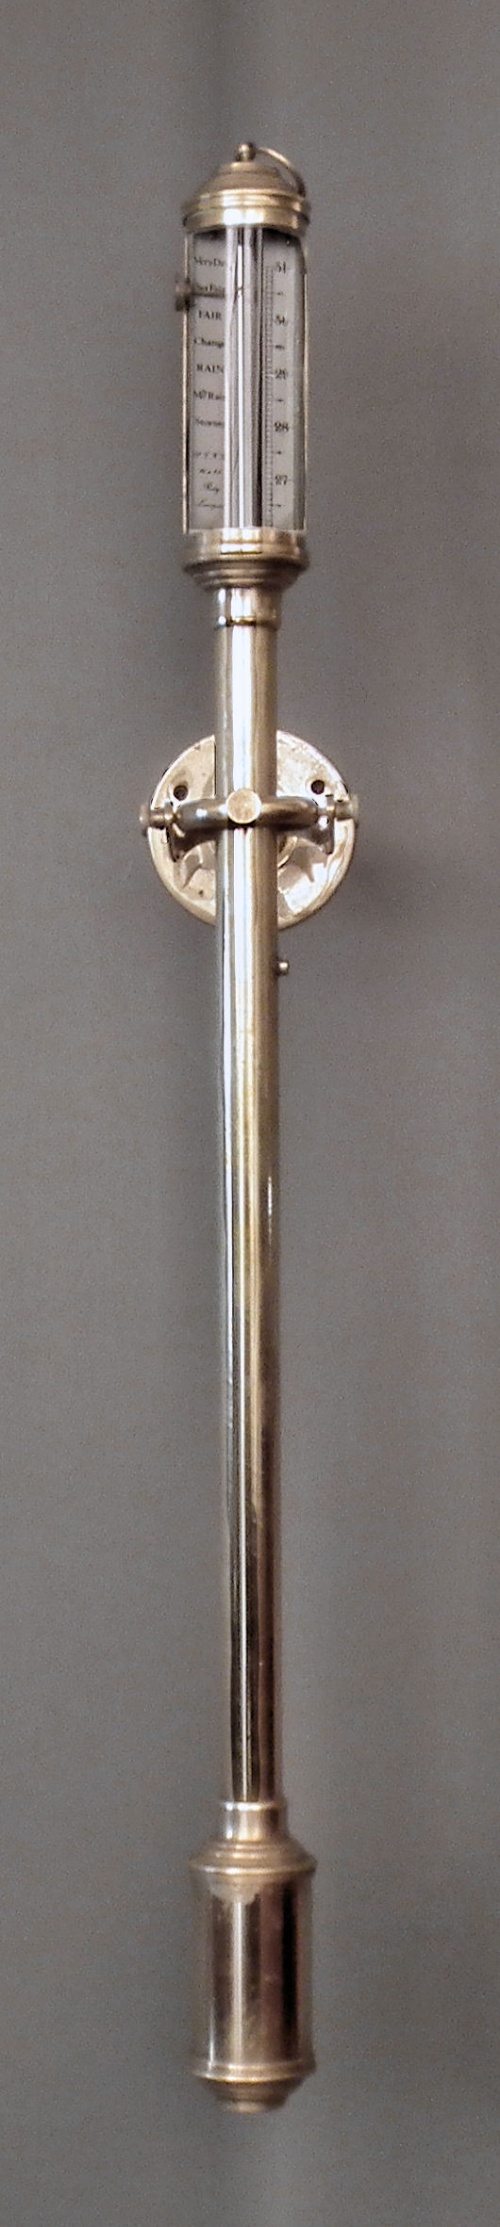 A modern lacquered brass marine 15d978